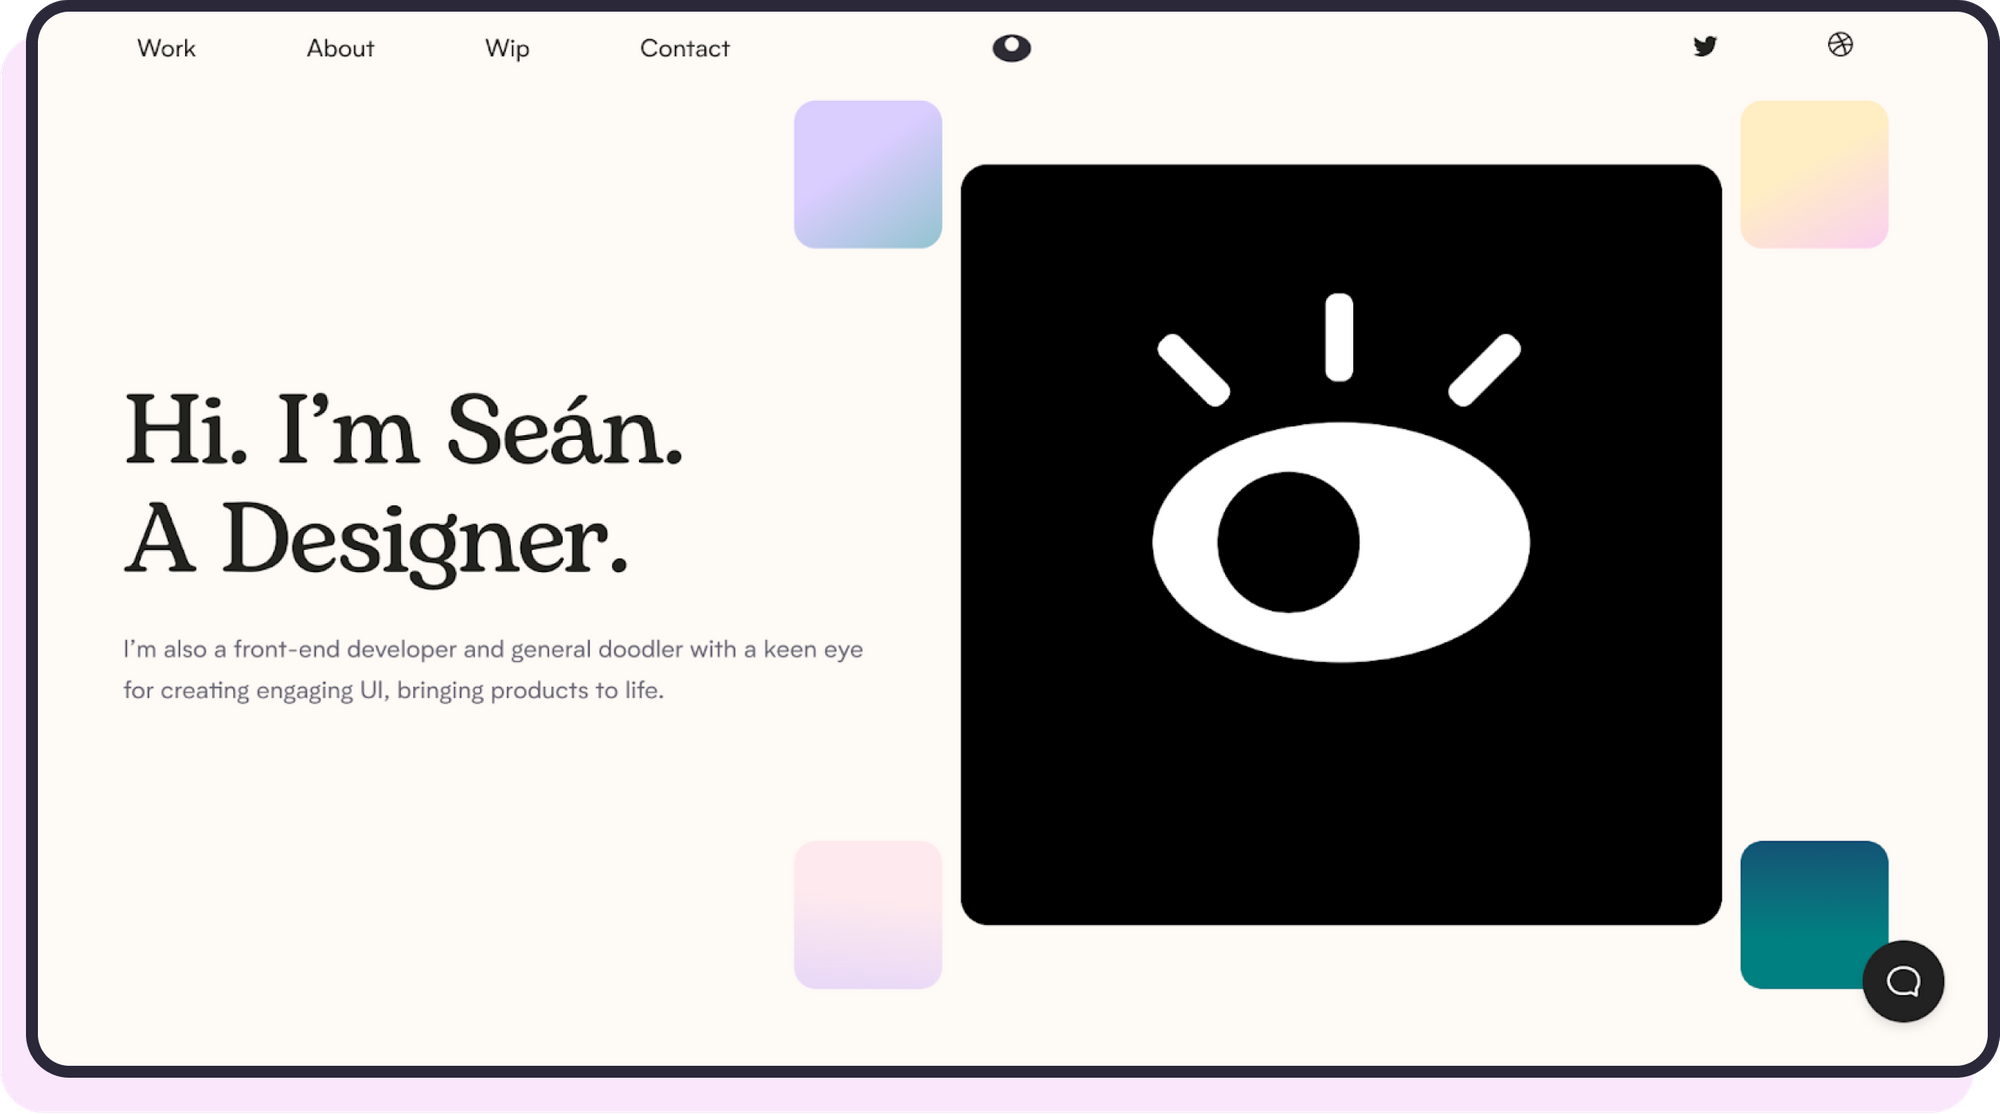 Sean's portfolio homepage